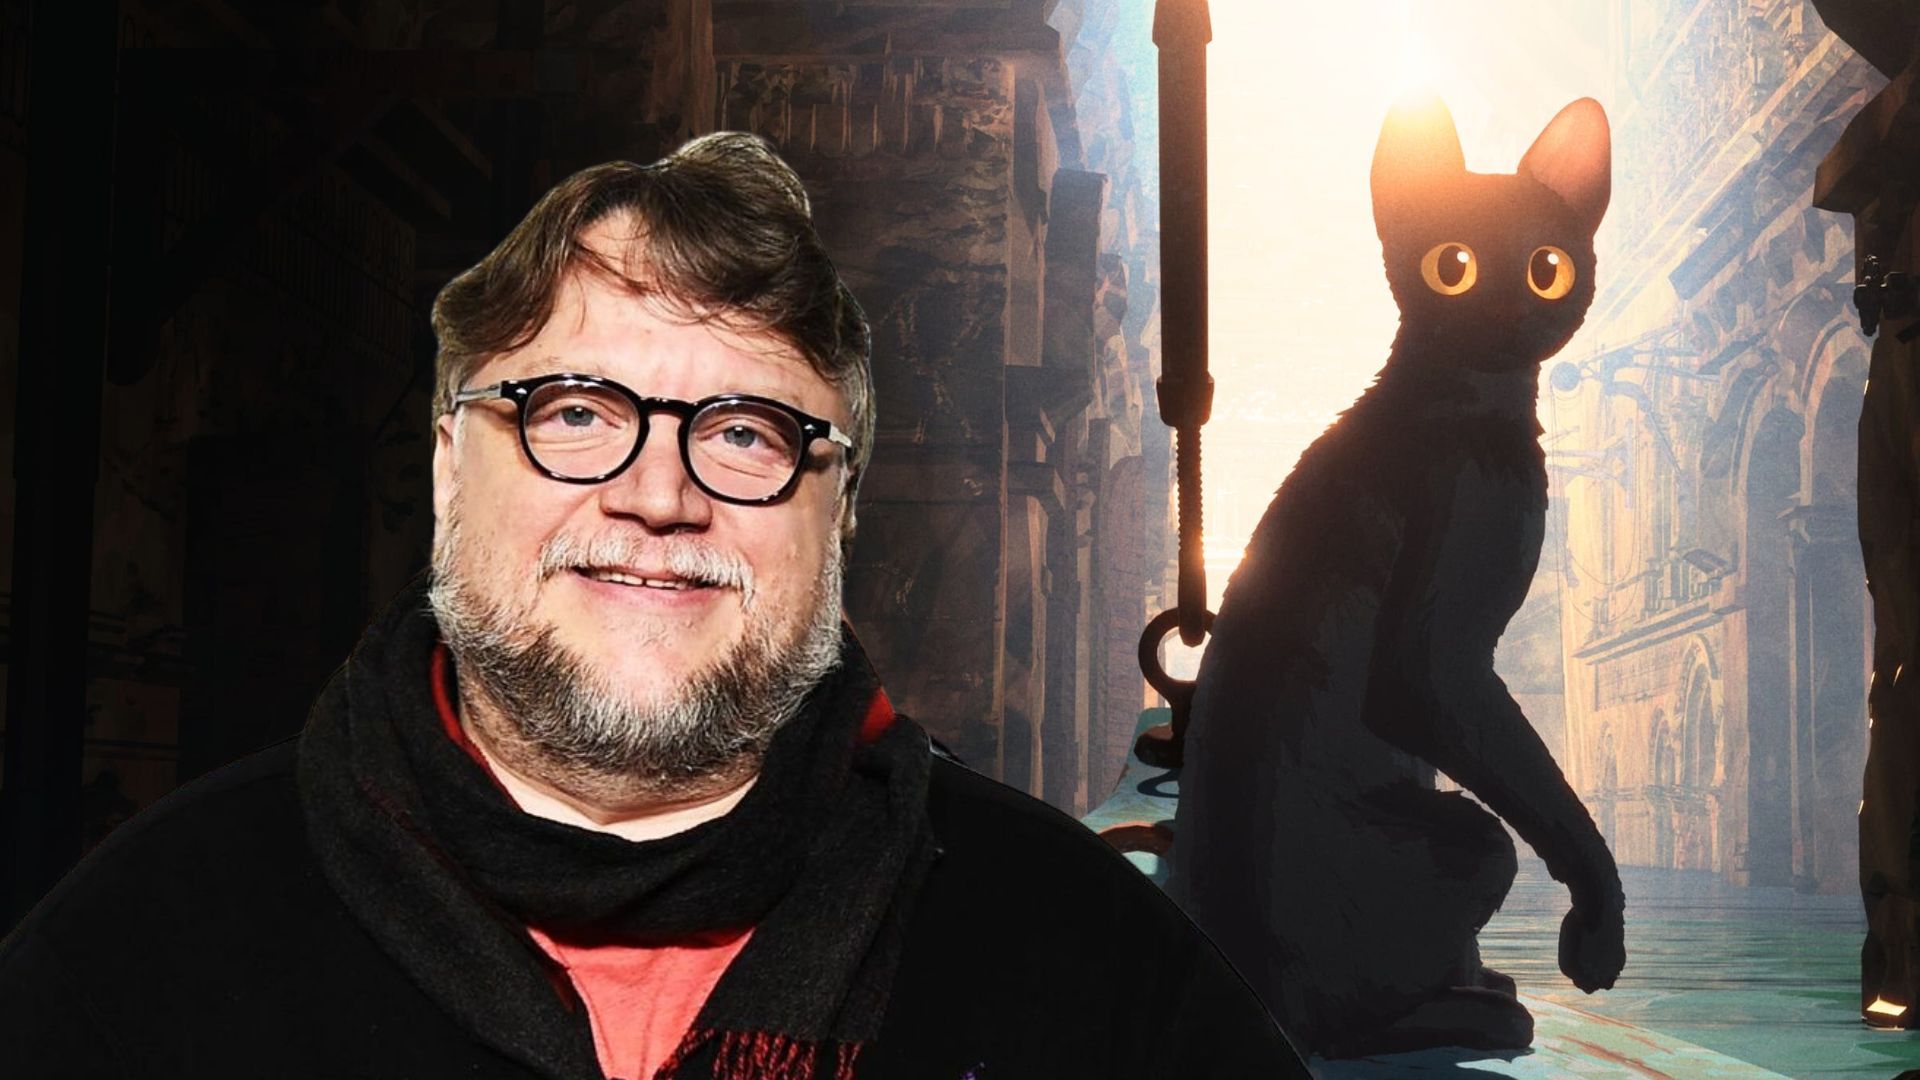 Le futur de l'animation est là selon Guillermo del Toro